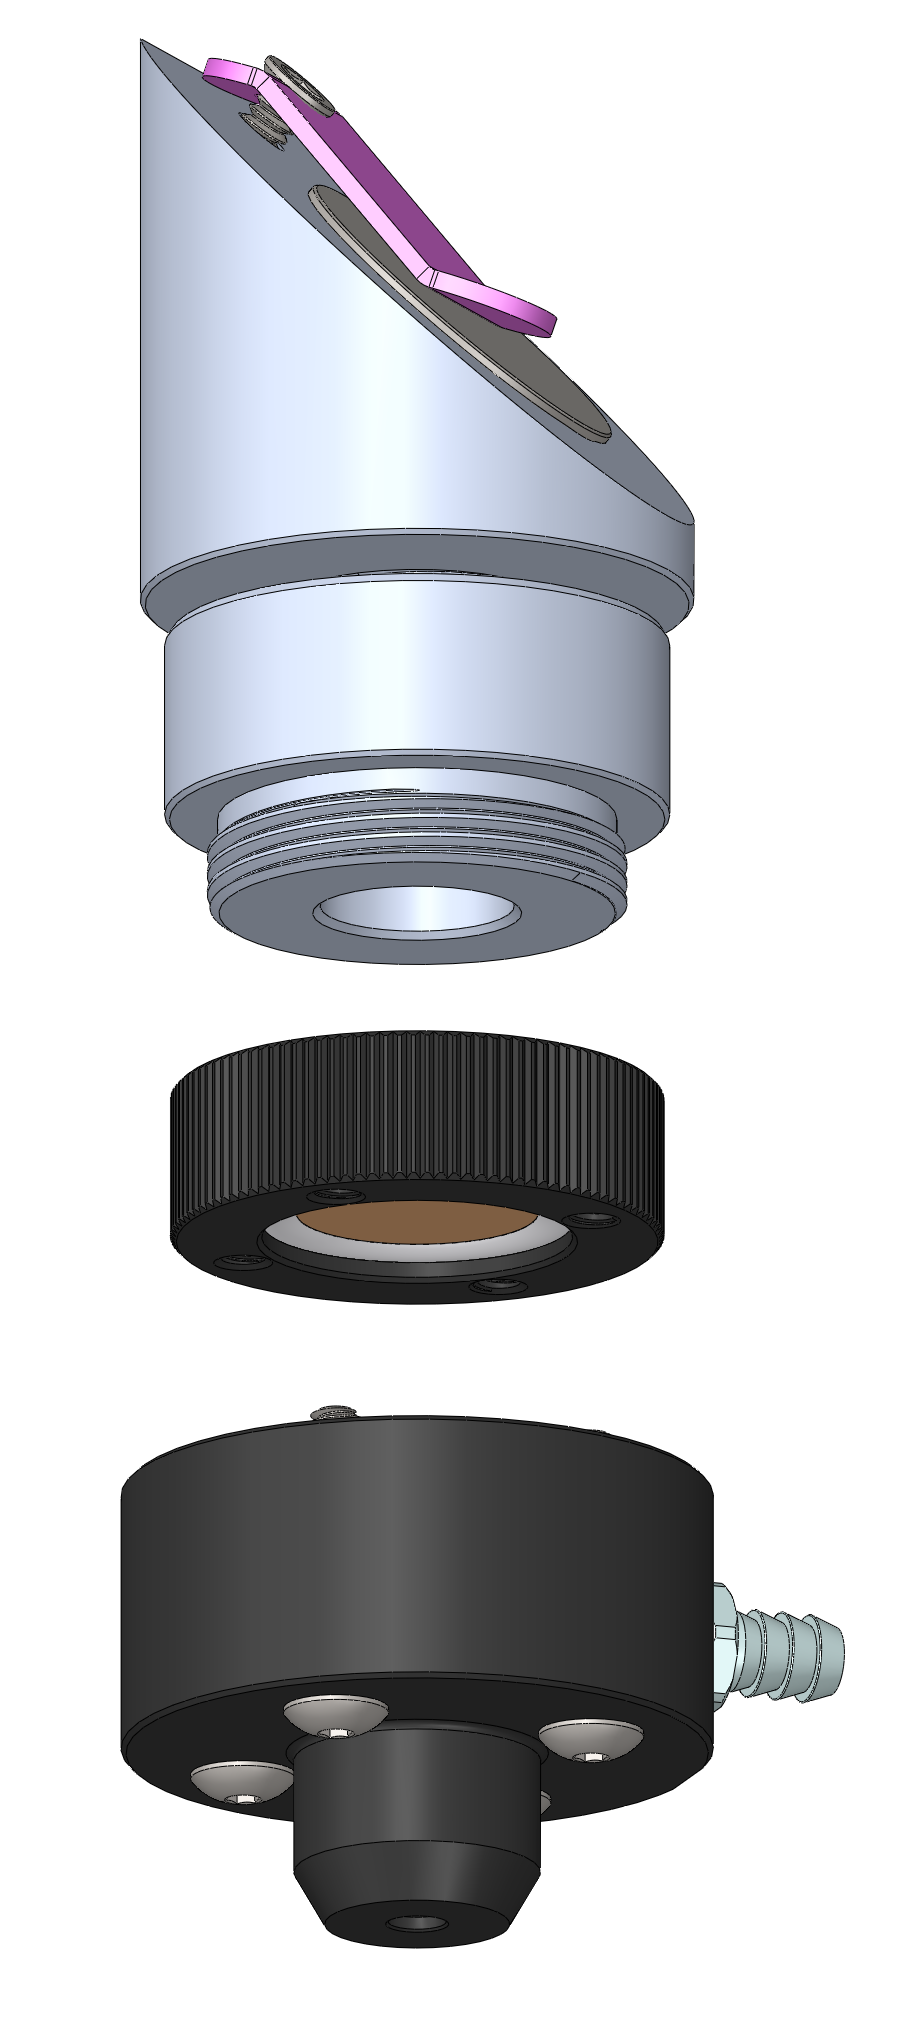 K40 - Adjustable focus Head upgrade – American Photonics